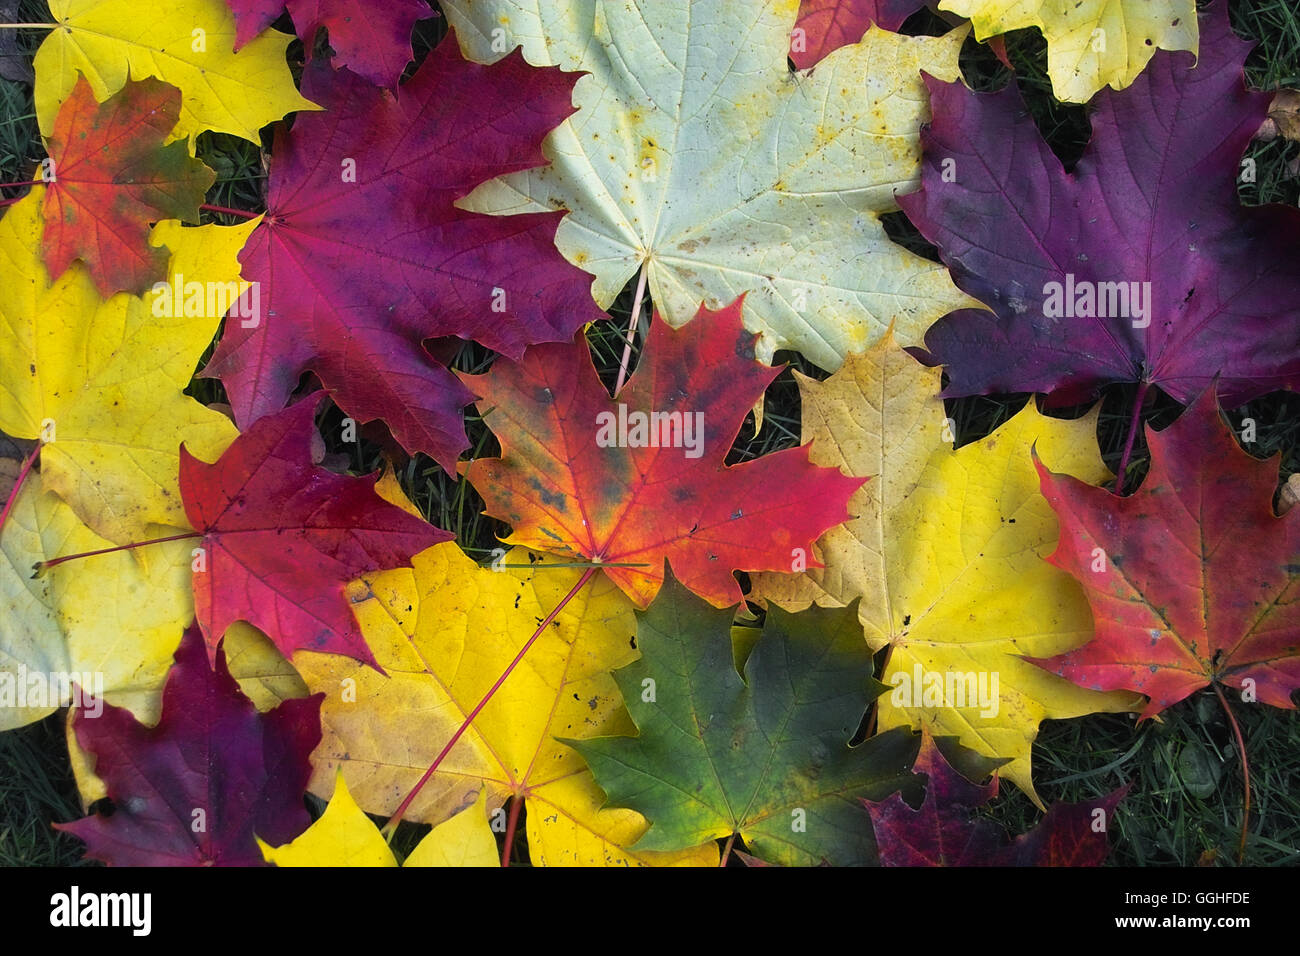 Les feuilles d'automne, feuilles colorées, érable de Norvège, buntes herbstlaub des spitz-ahorn (Acer platanoides) Banque D'Images